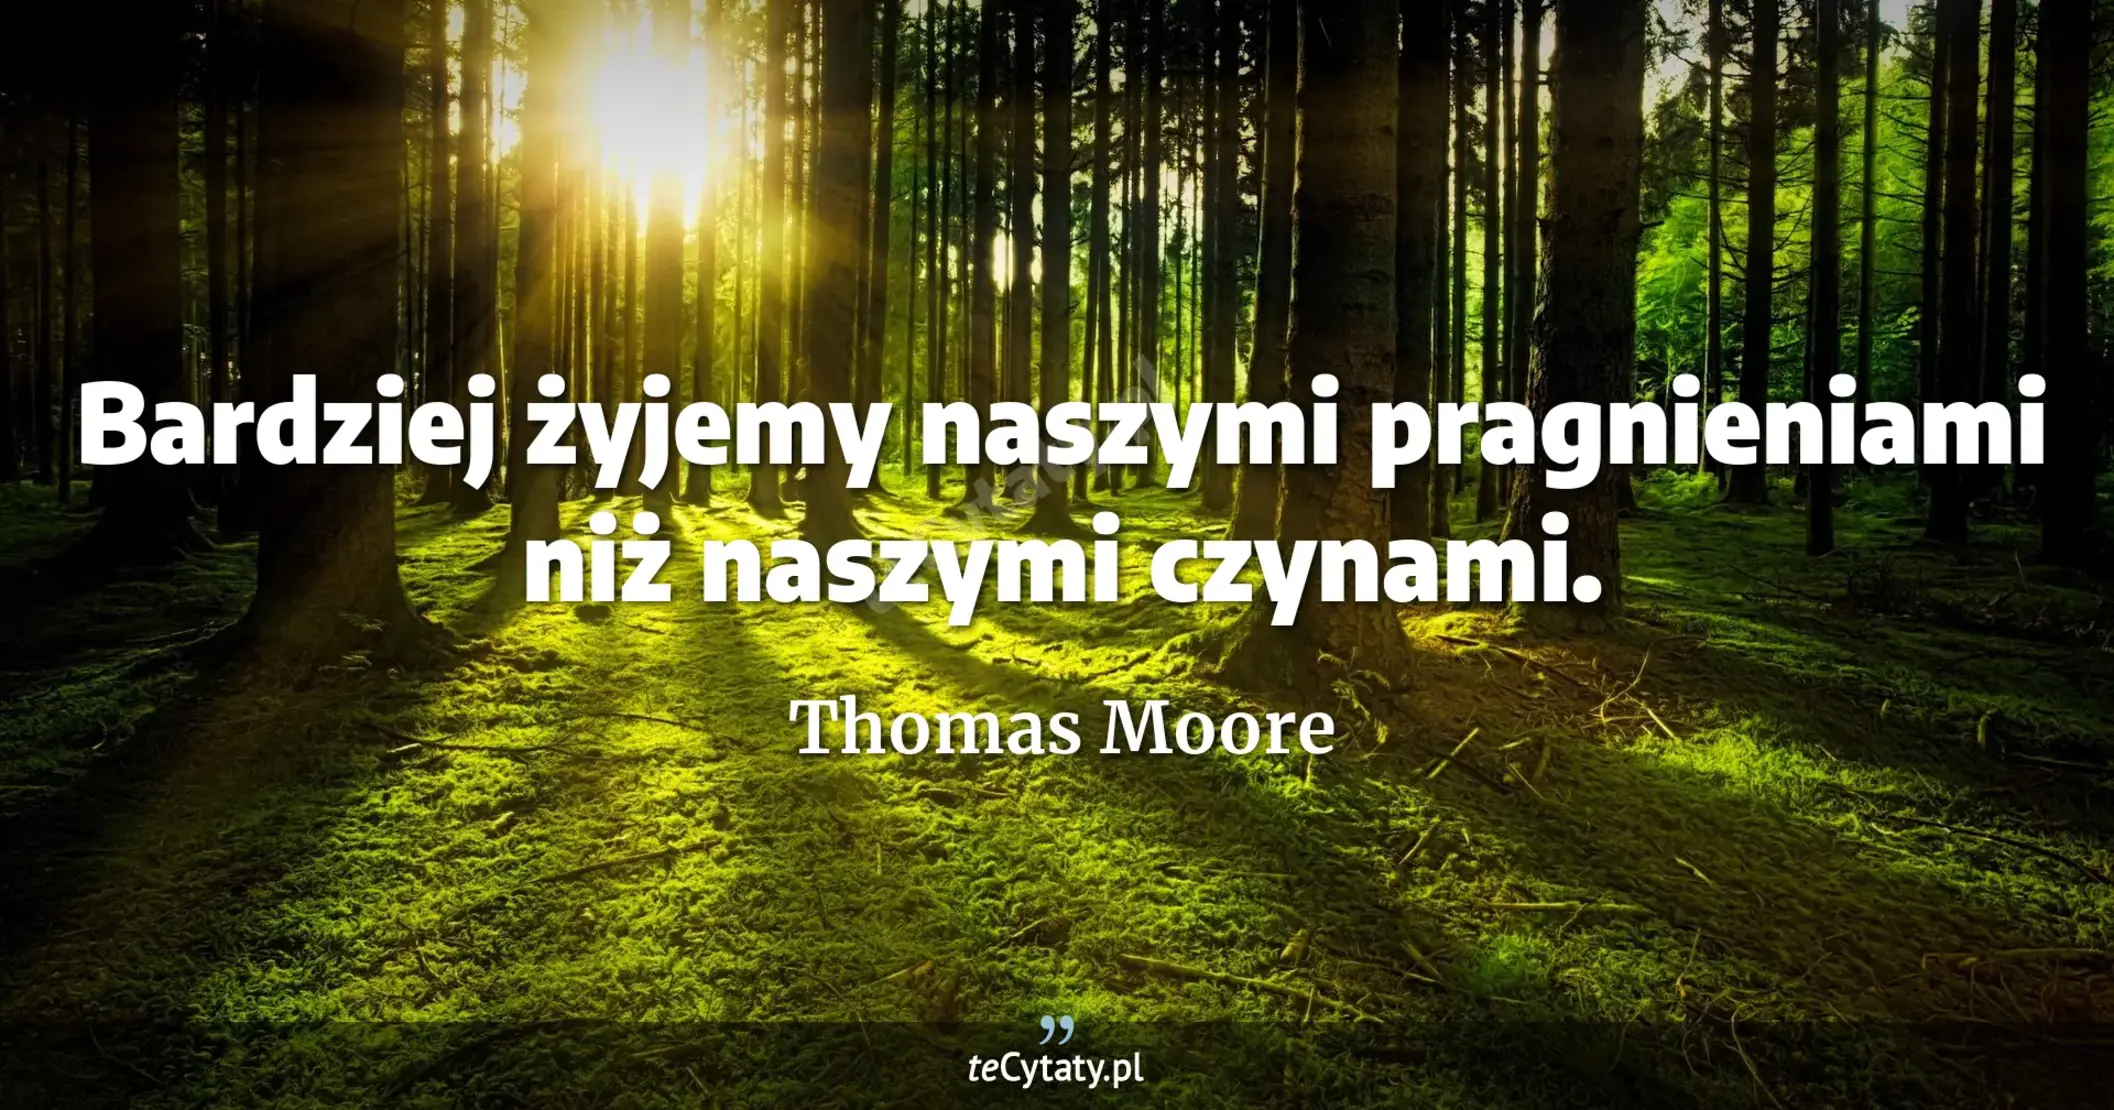 Bardziej żyjemy naszymi pragnieniami niż naszymi czynami. - Thomas Moore